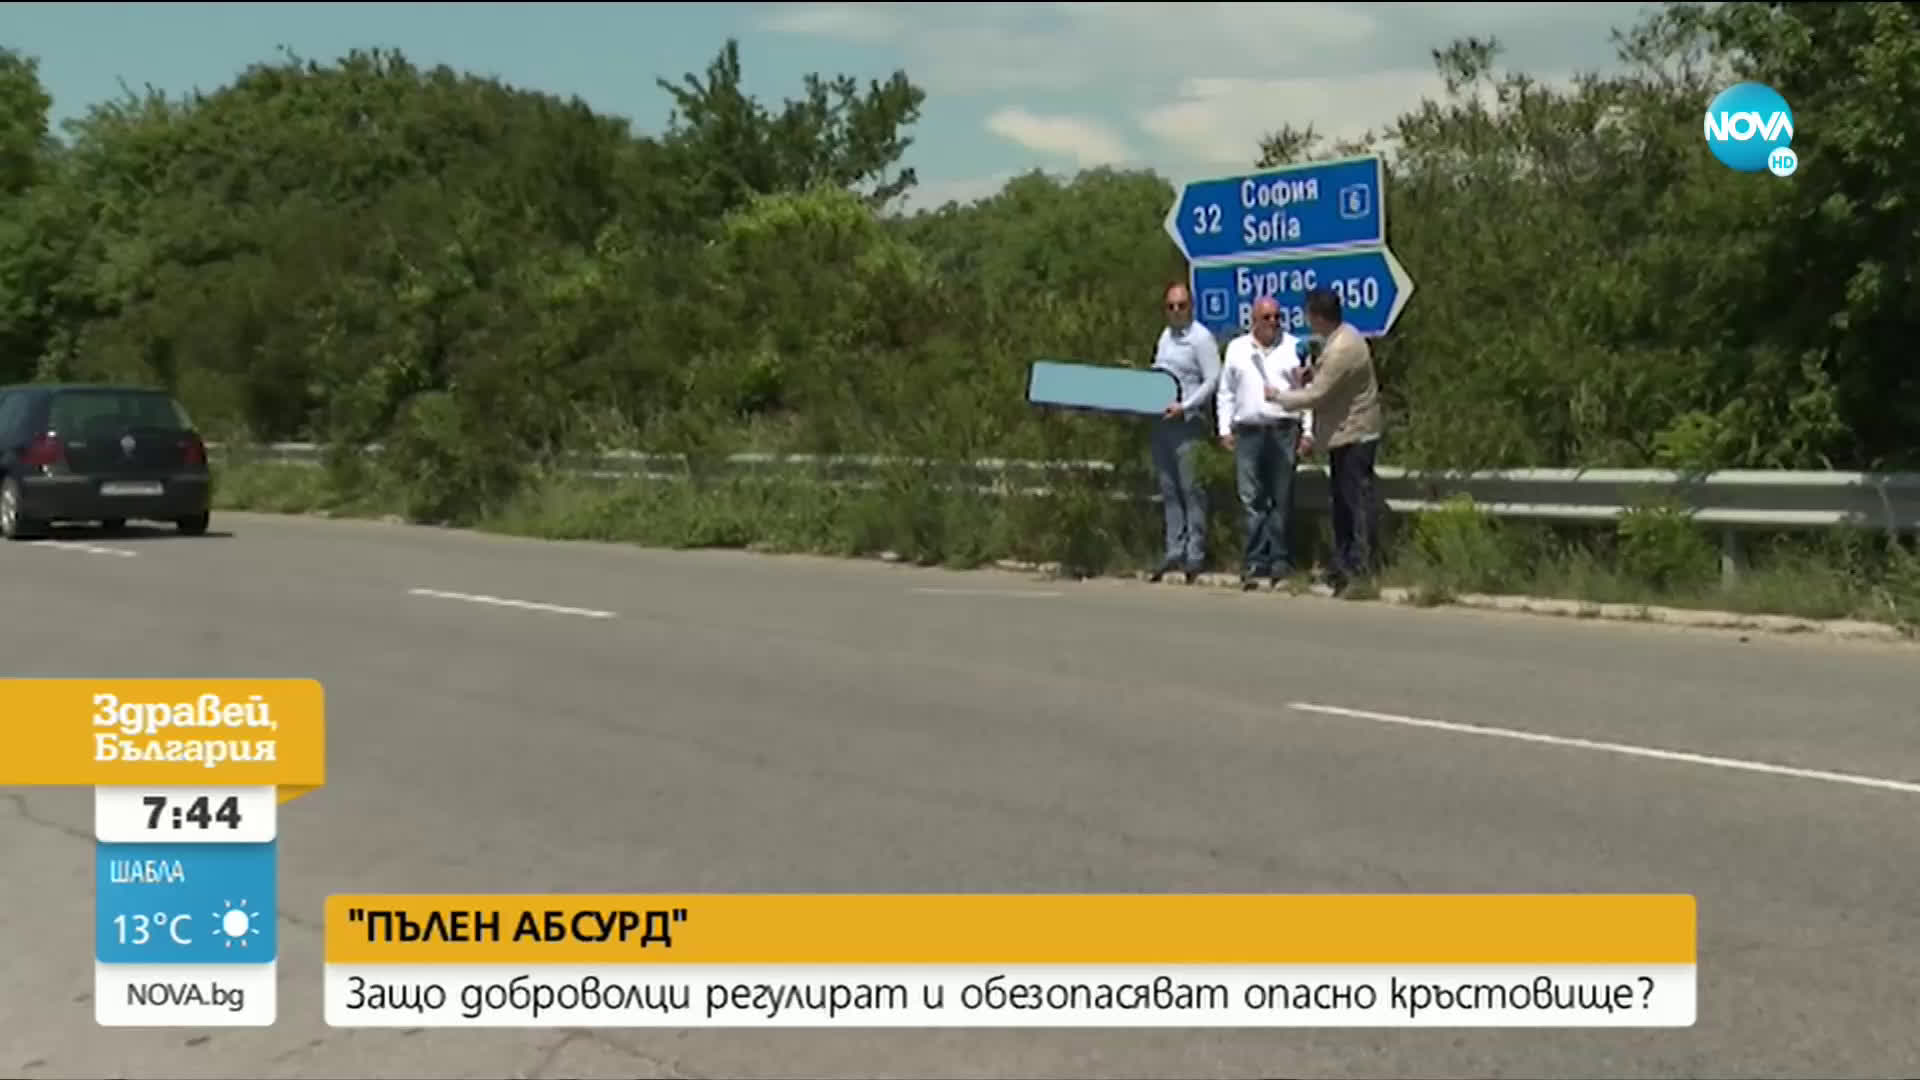 "ПЪЛЕН АБСУРД": Защо доброволци регулират и обезопасяват кръстовище